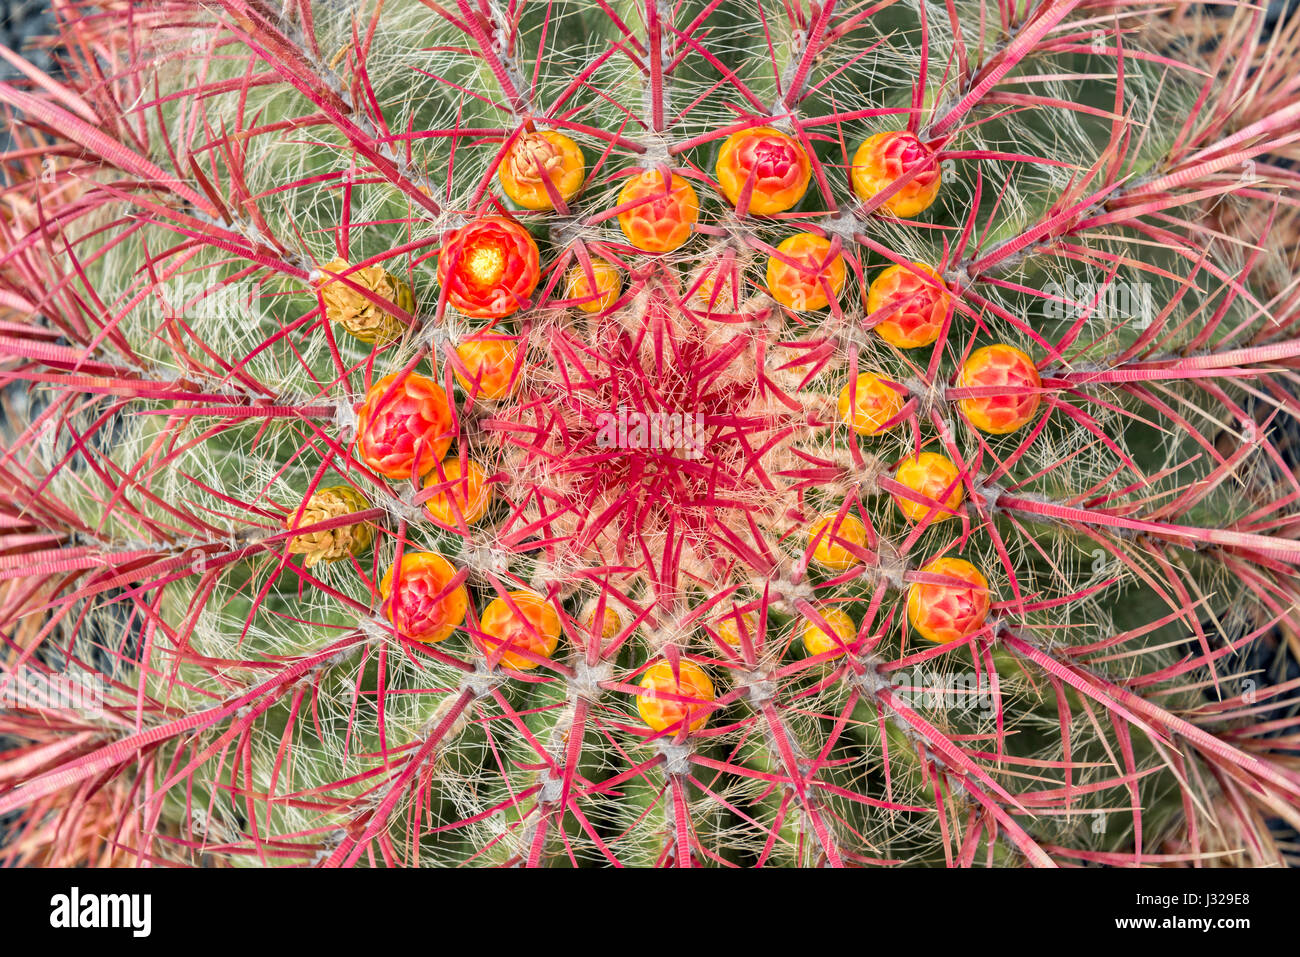 Près d'un baril de l'Arizona (cactus Ferocactus wislizeni) avec des fleurs orange Banque D'Images